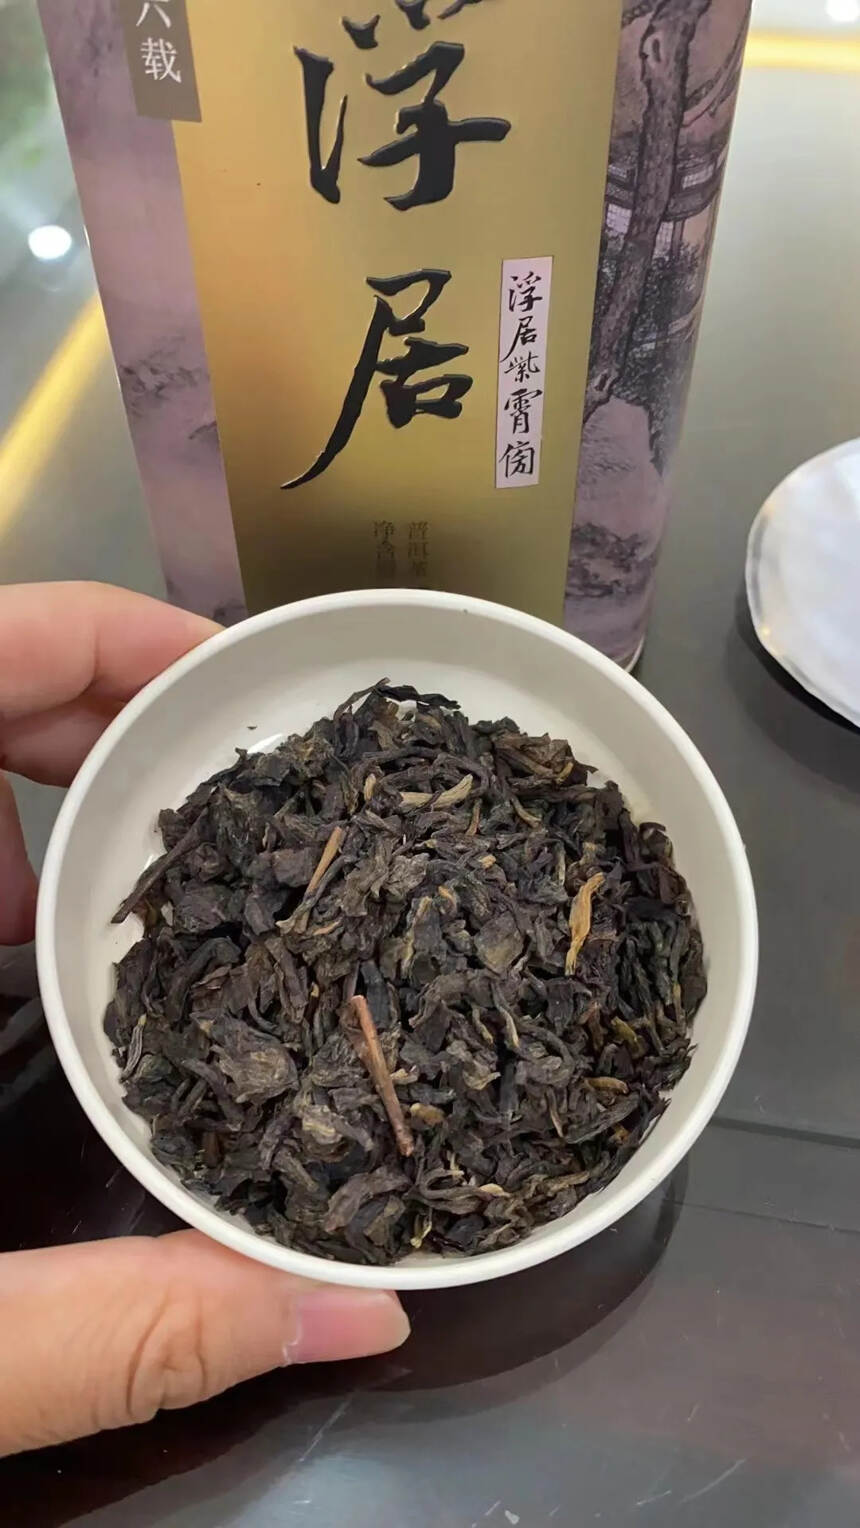 十六年陈 尧安号 浮居生茶老散茶
一罐125克 一套